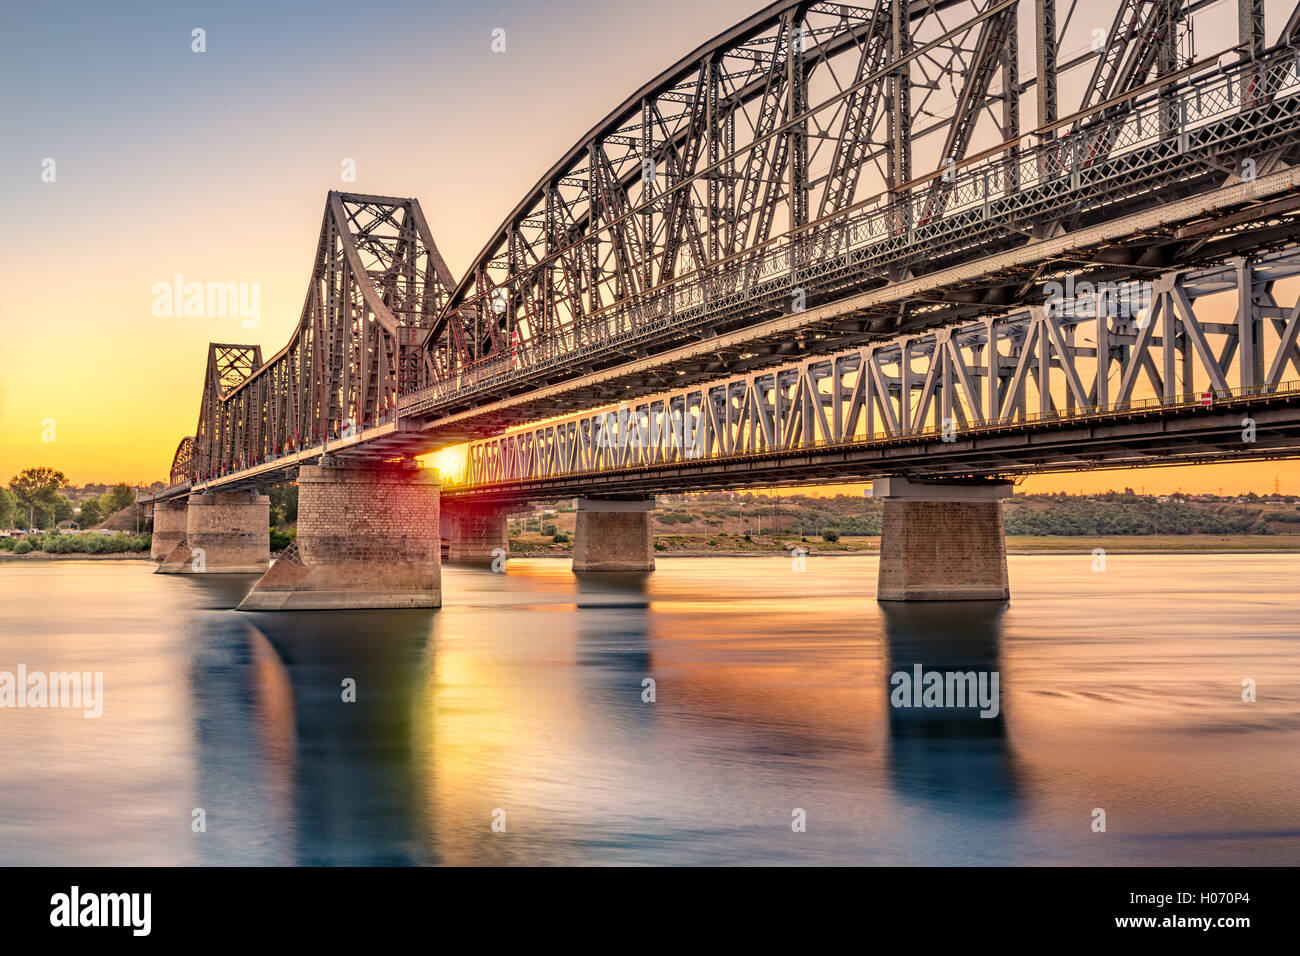 Anghel Saligny bridge qui traverse le Danube, près de Cernavoda, Roumanie Banque D'Images